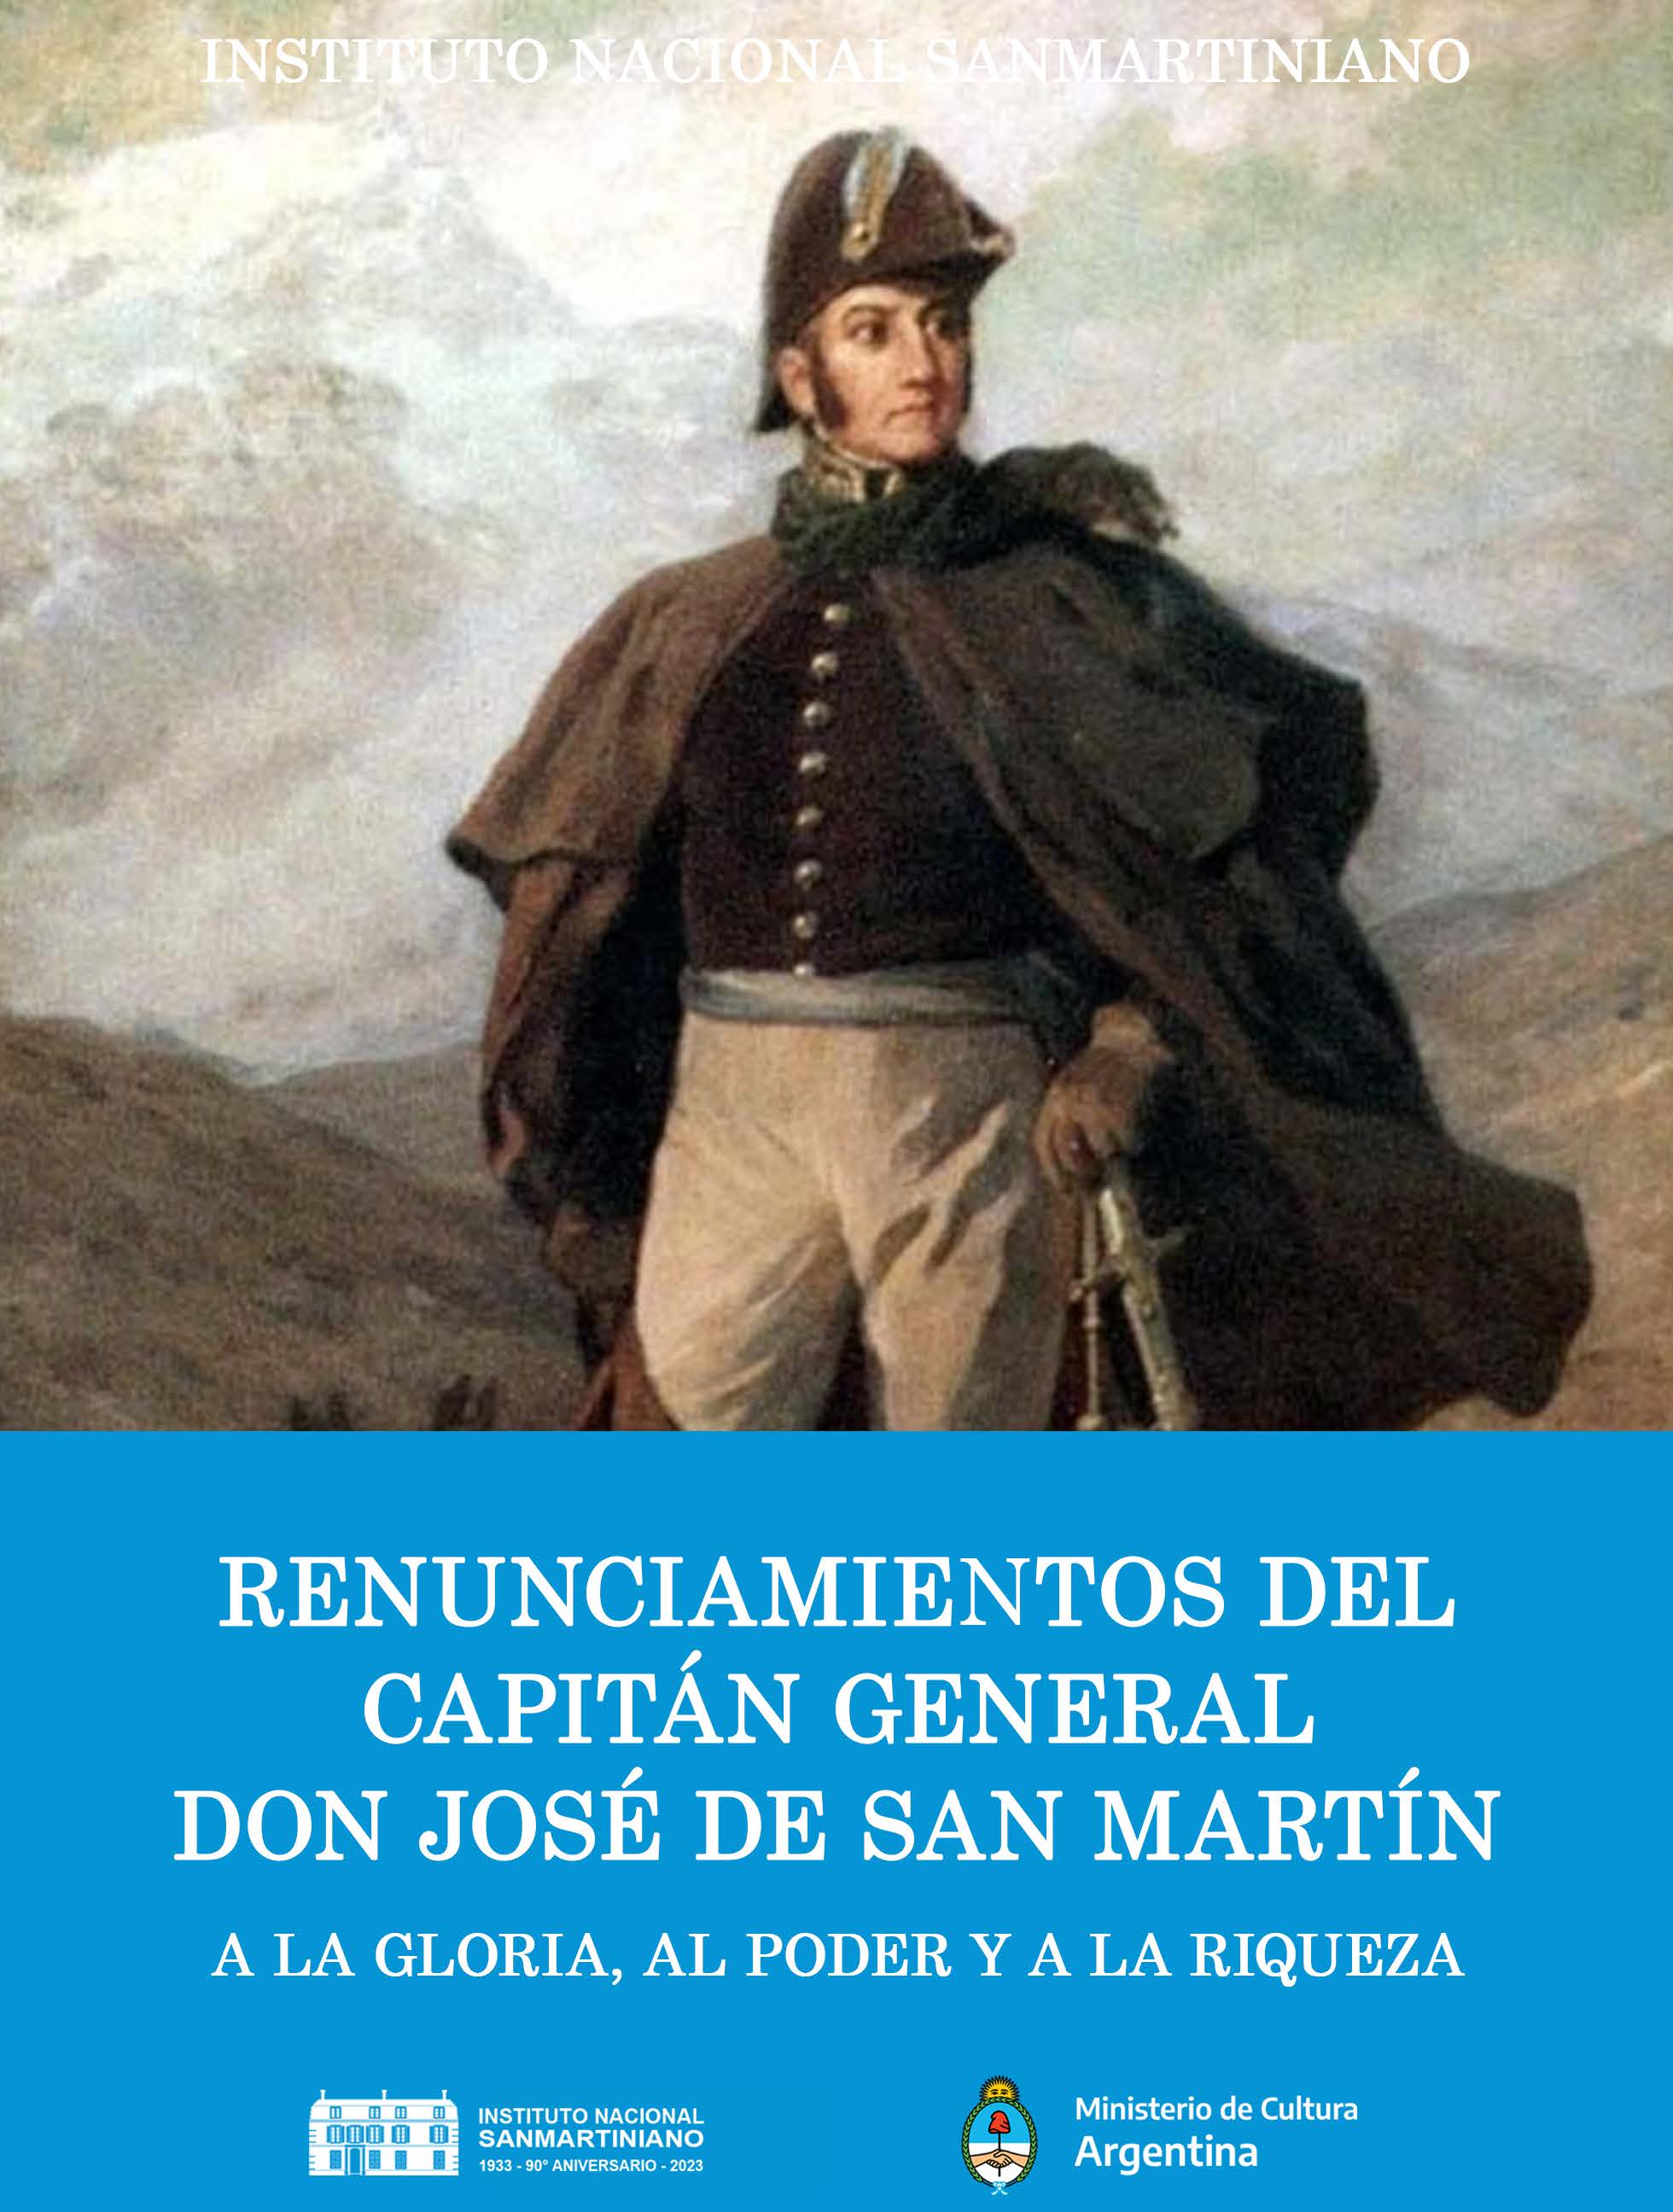 AA.VV. "Renunciamientos del Capitán General Don José de San Martín. A la Gloria, al Poder y a la Riqueza". Instituto Nacional Sanmartiniano. Buenos Aires, 2023.